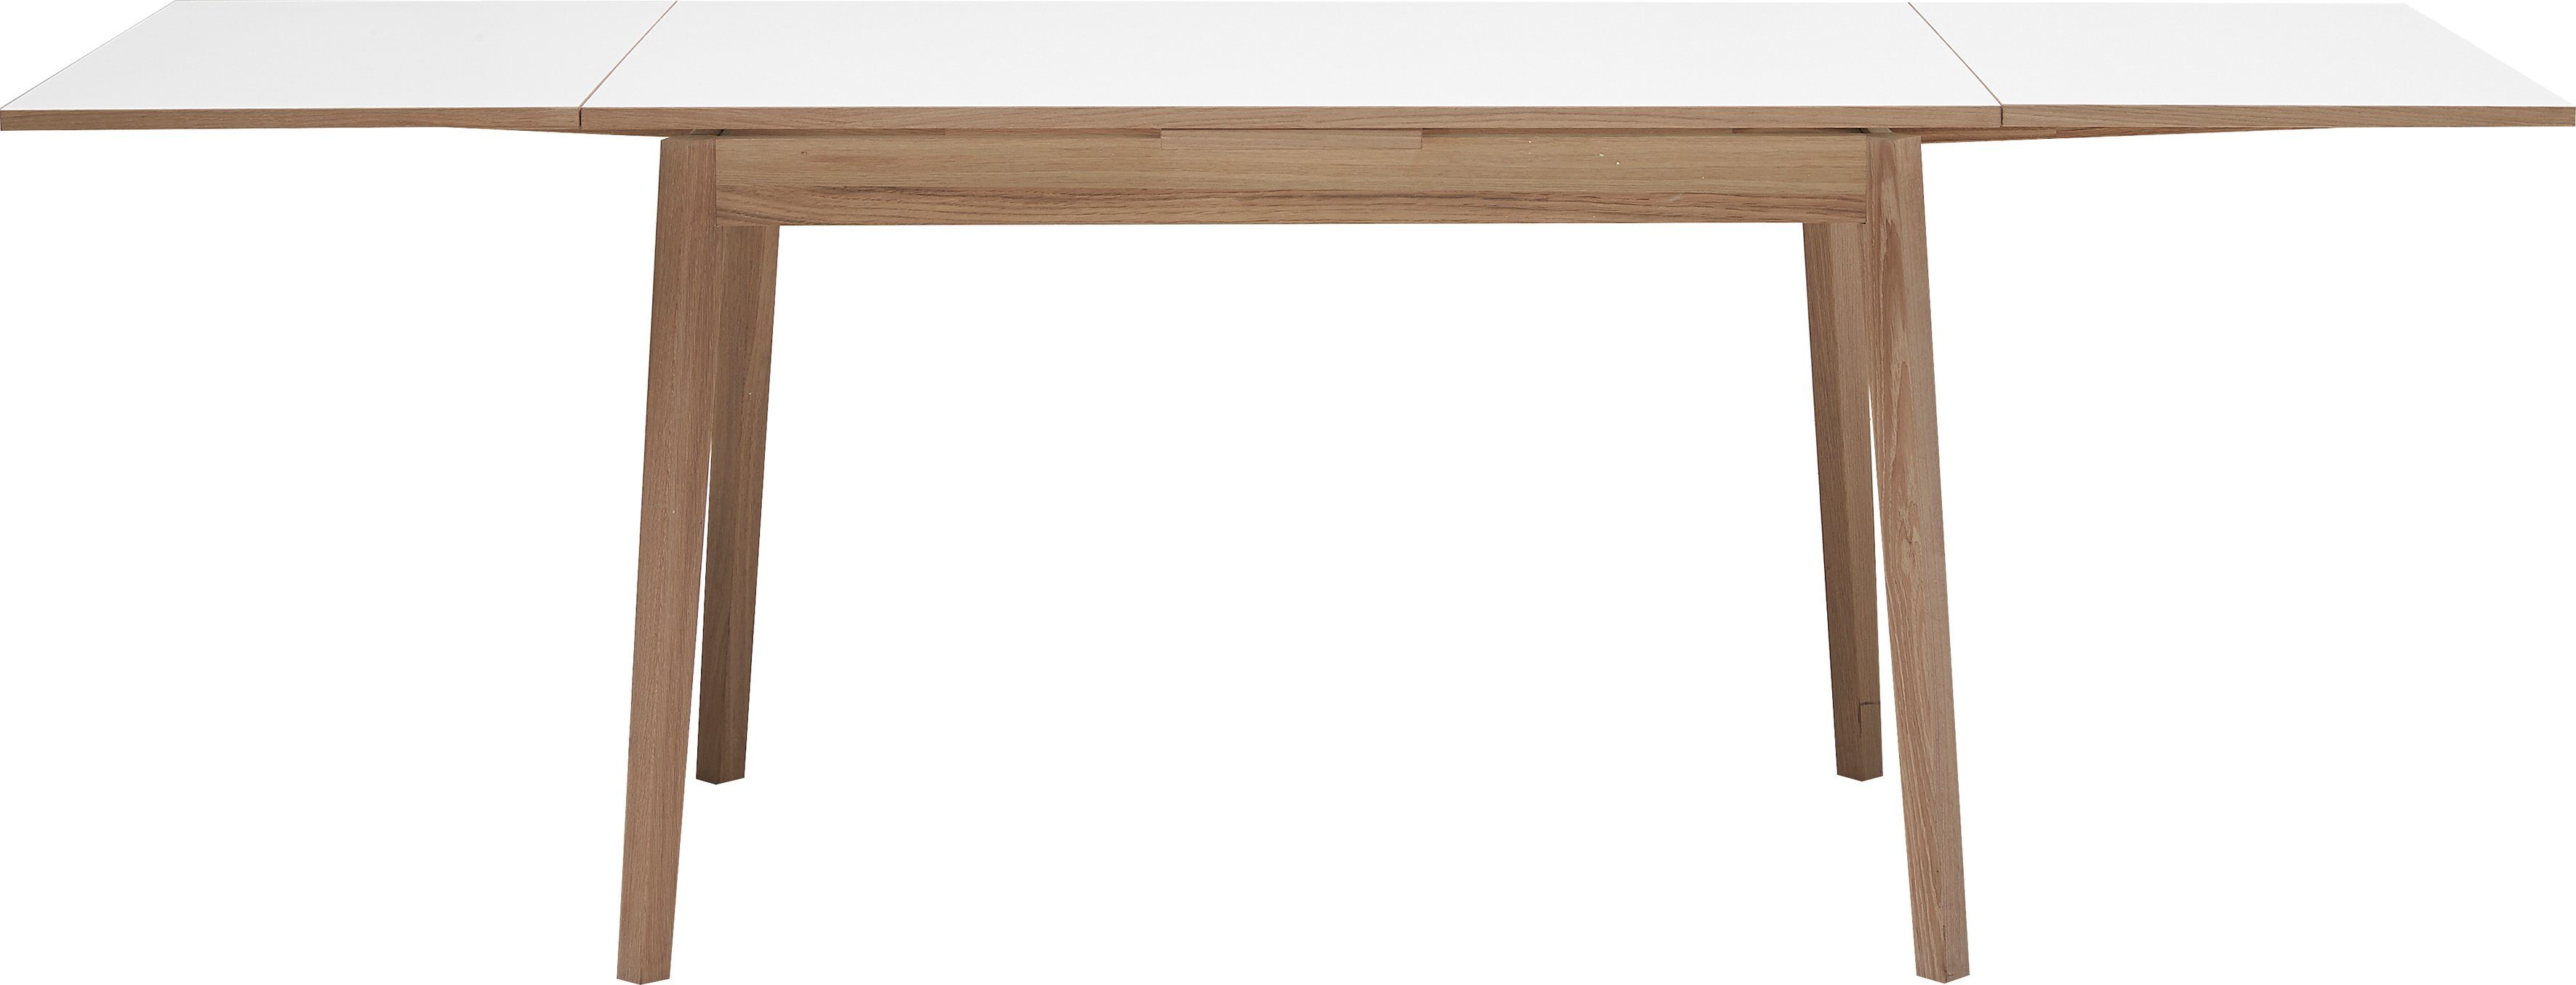 Hammel Furniture Esstisch Basic | Tischplatte aus Naturfarben und Hammel cm, Melamin Weiß/Natur by Massivholz Gestell in Single, 180(280)x80